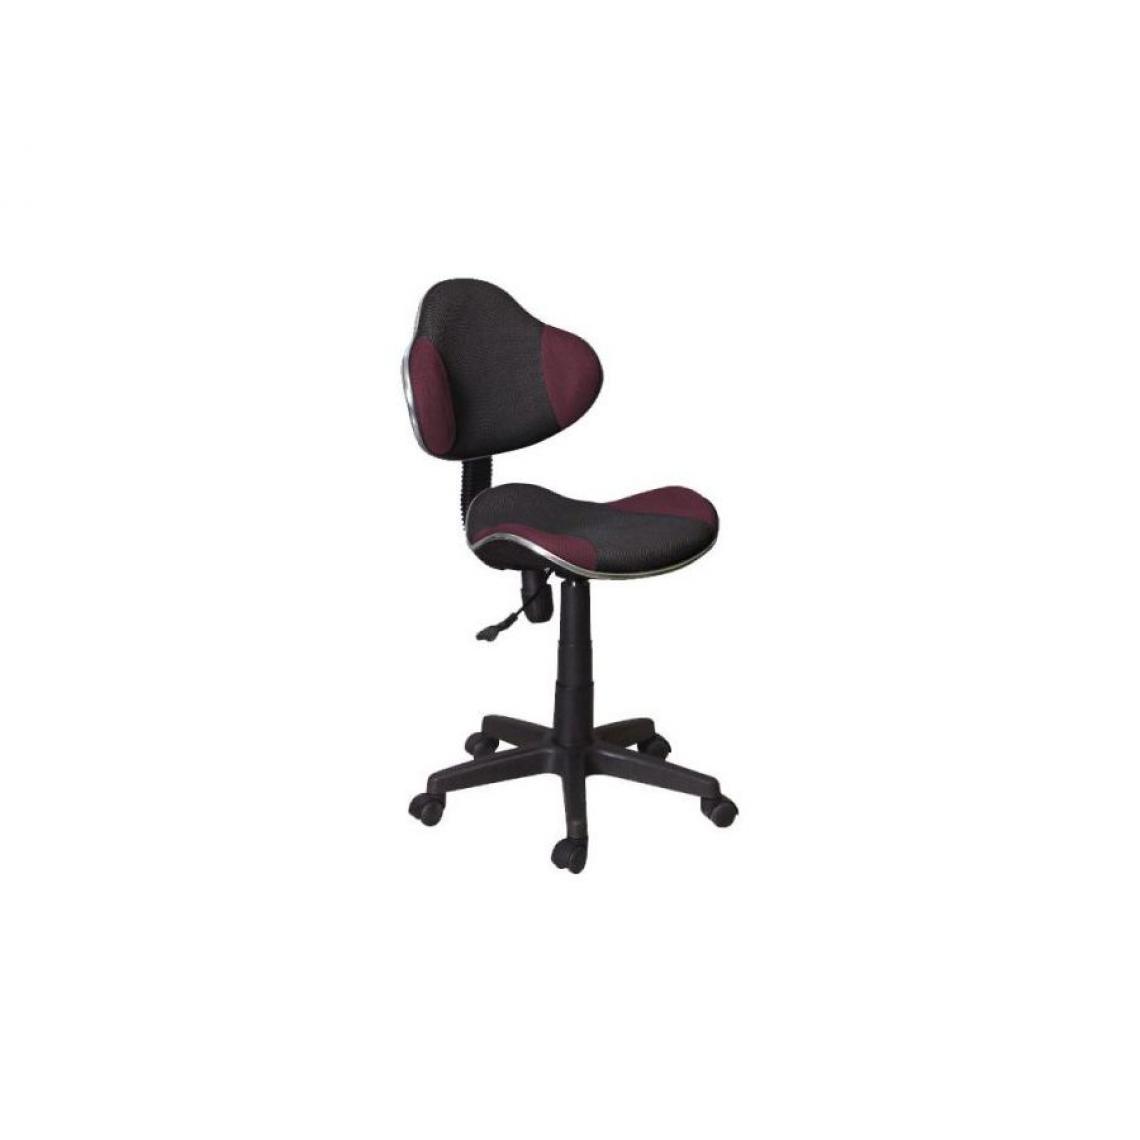 Hucoco - ABBEY | Chaise pivotante pour enfants | Hauteur réglable 80-92 cm | Tissu haute qualité | Chaise de bureau à roulettes - Violet - Chaises